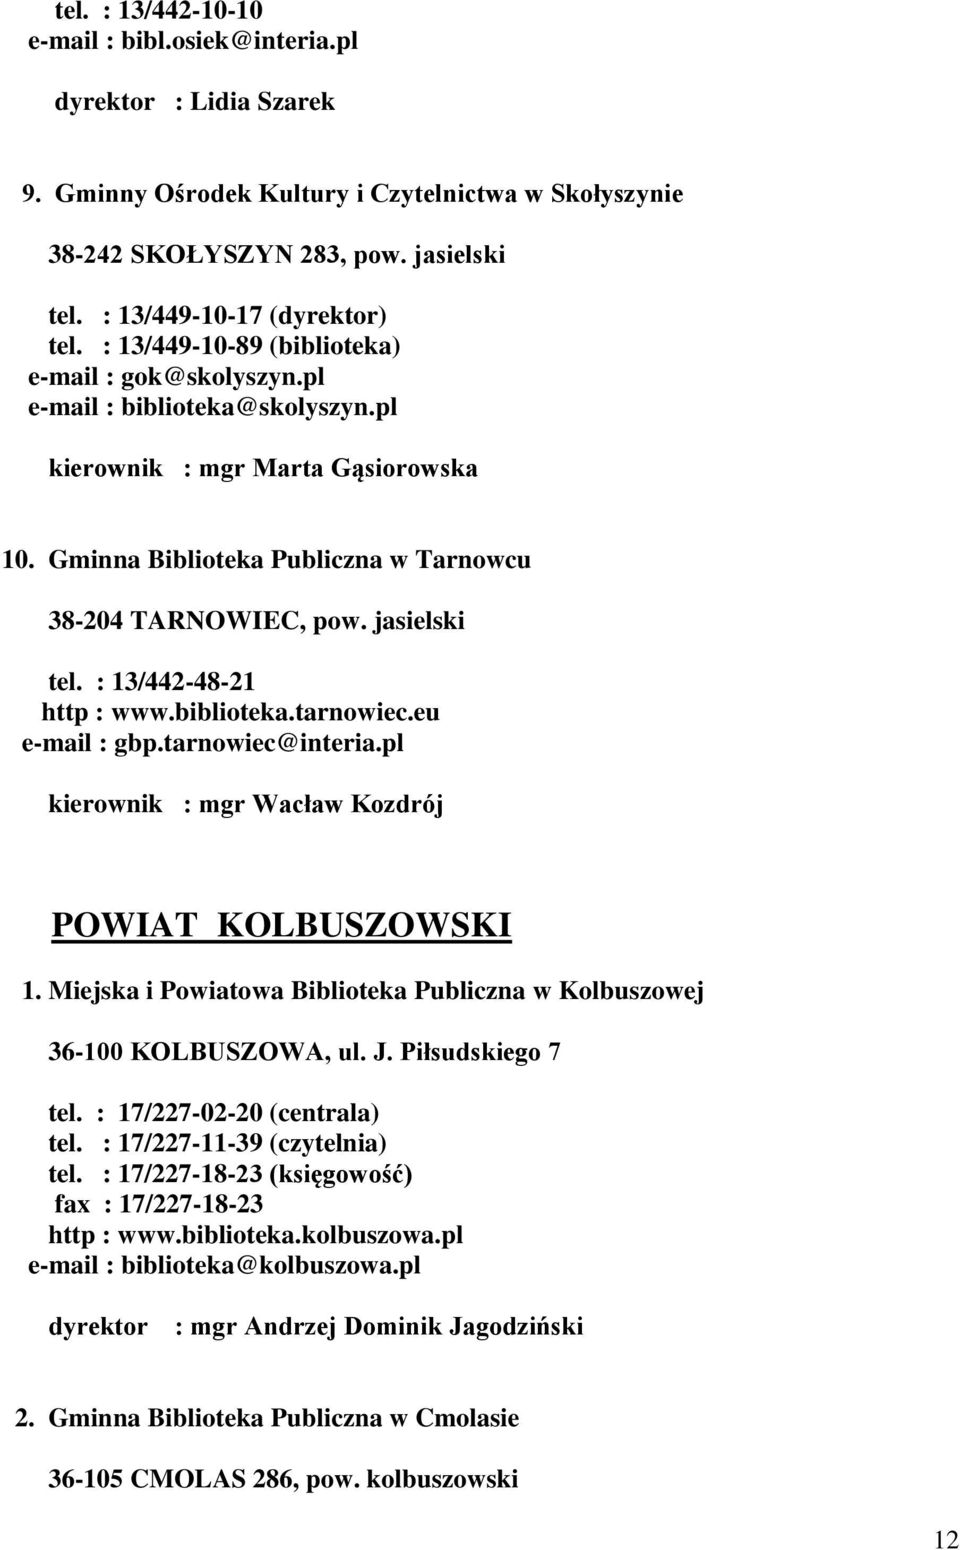 Gminna Biblioteka Publiczna w Tarnowcu 38-204 TARNOWIEC, pow. jasielski tel. : 13/442-48-21 http : www.biblioteka.tarnowiec.eu e-mail : gbp.tarnowiec@interia.